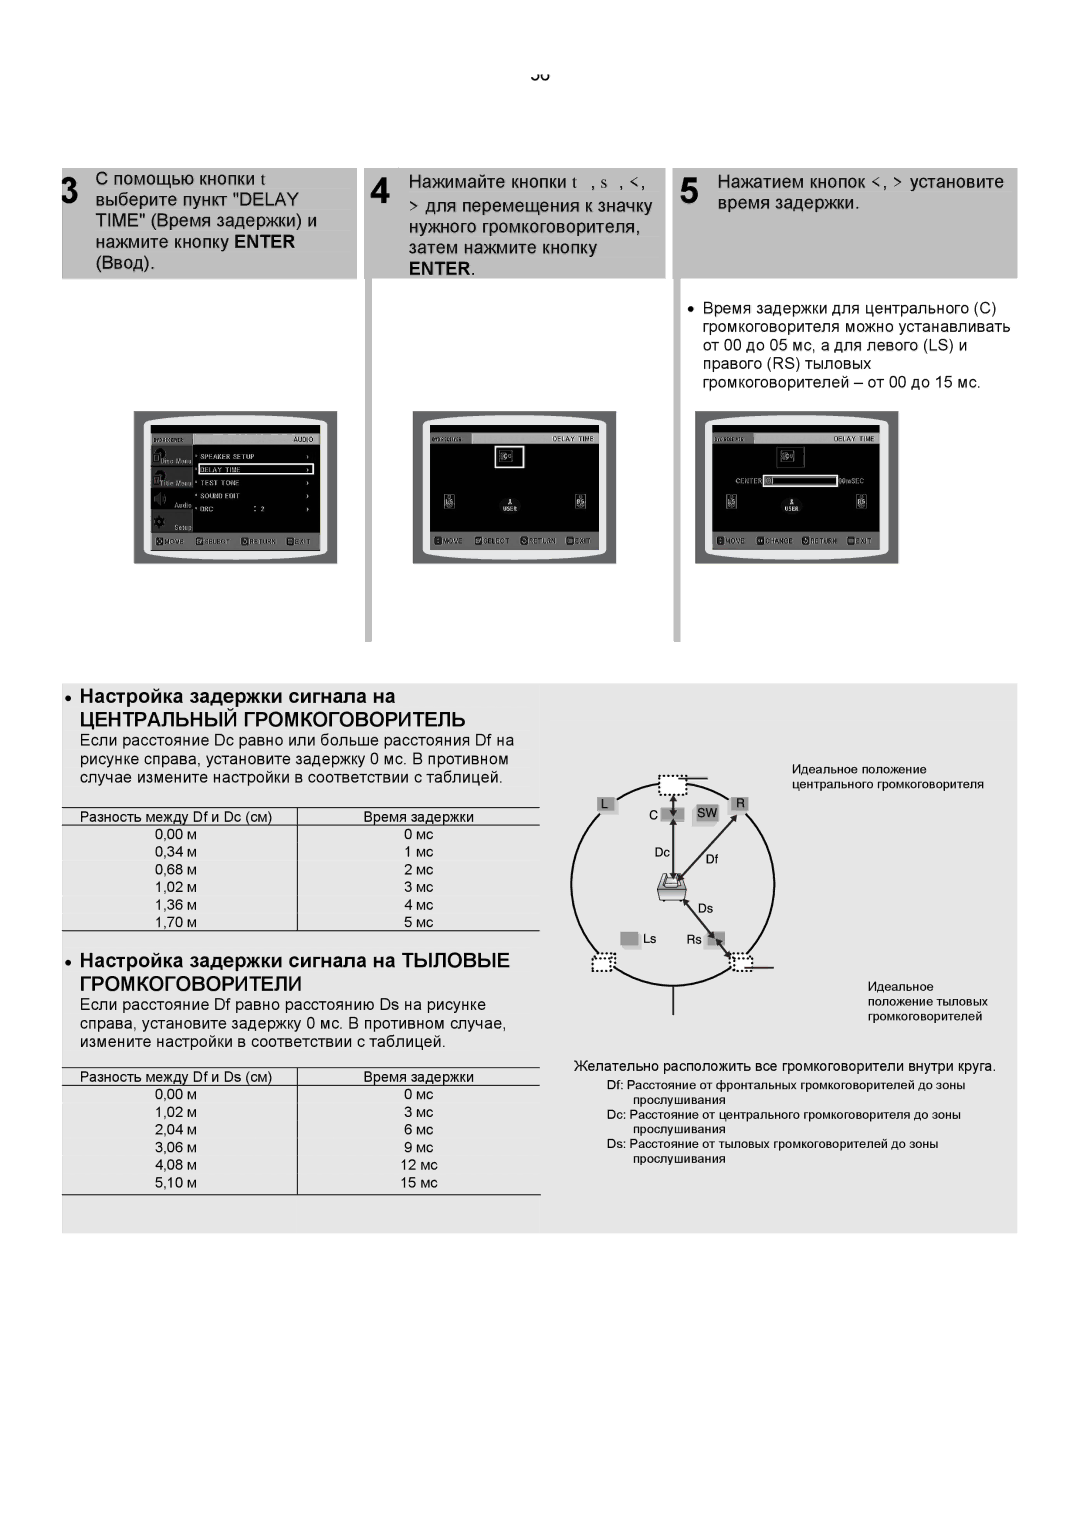 Samsung HT-DS420RH/XFO manual ∙ Настройка задержки сигнала на Тыловые, Нажатием кнопок , установите, Время задержки 